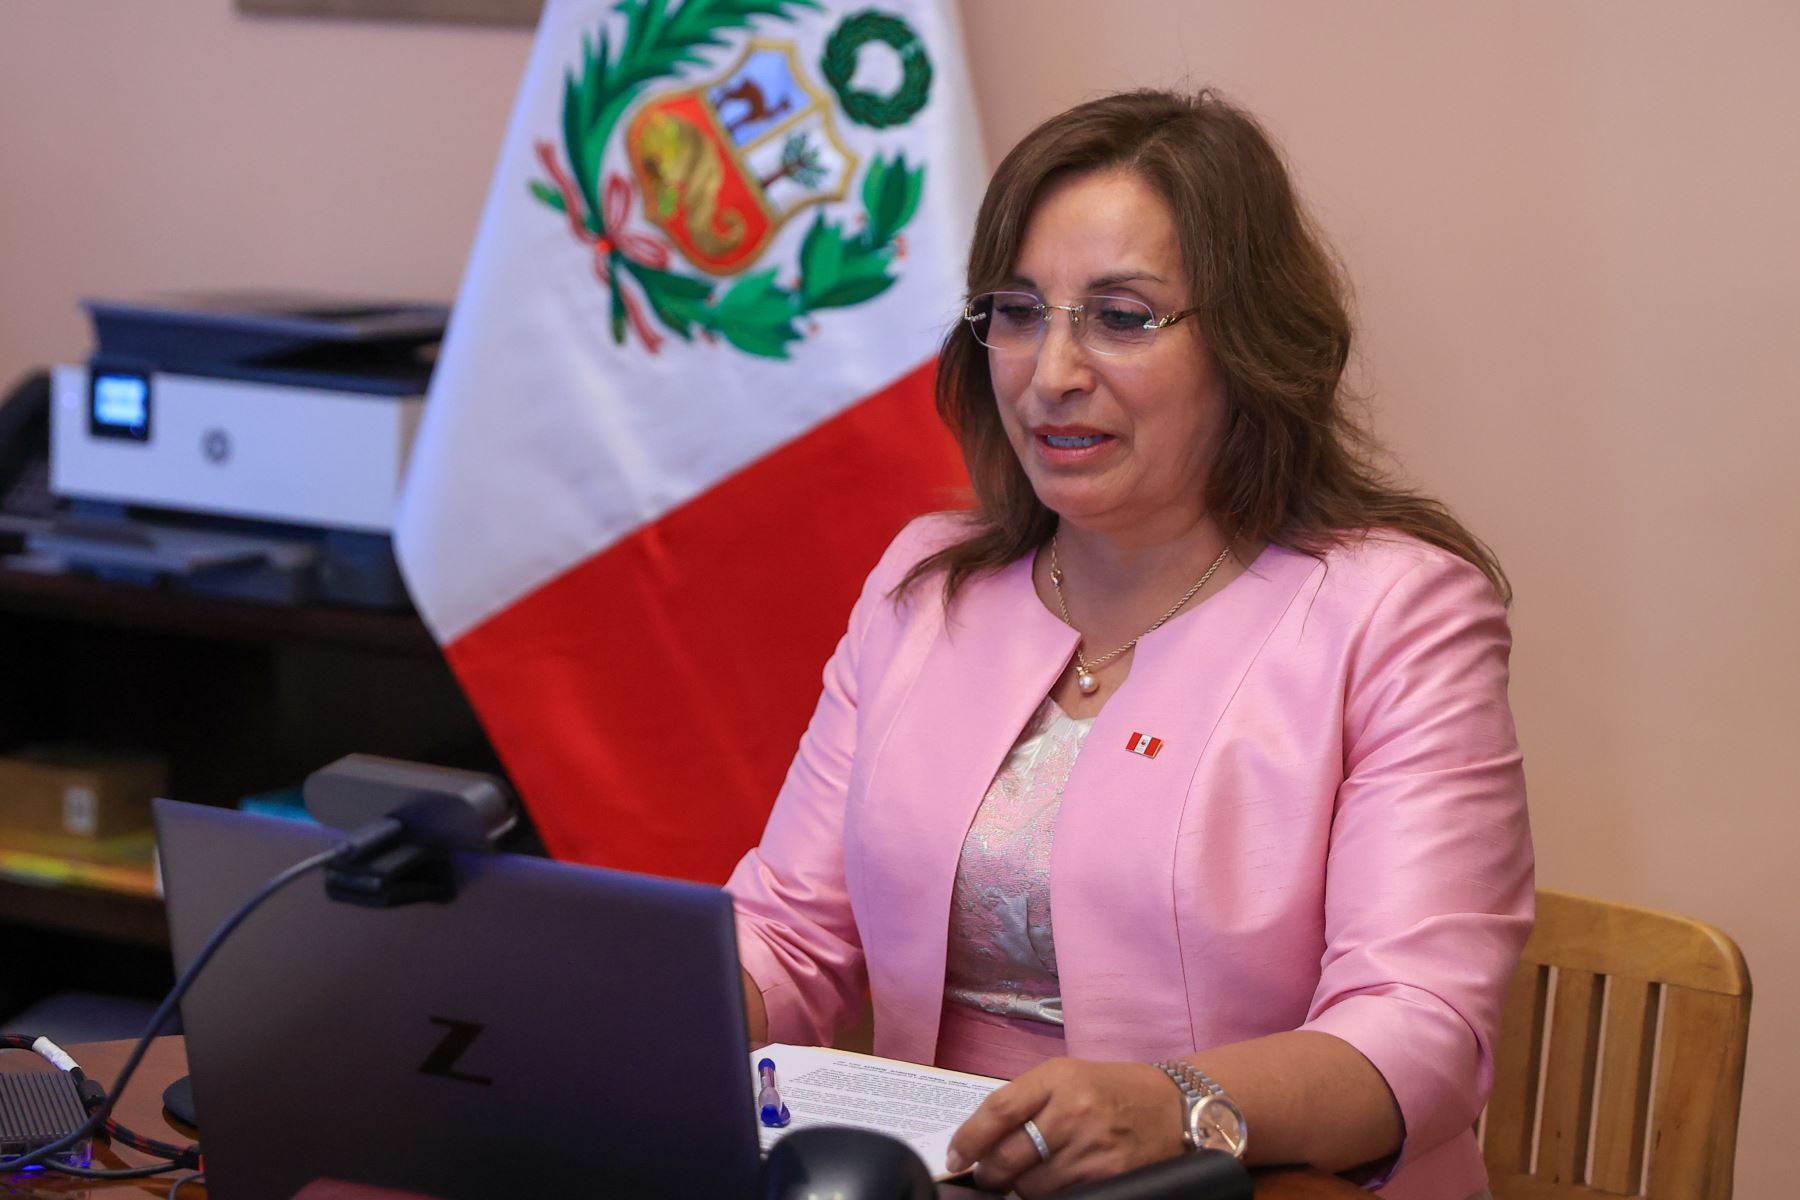 La presidenta Dina Boluarte participa desde Nueva York en el Consejo de Ministros, haciendo uso de la tecnología. En Lima, se encuentran presentes en la reunión los ministros de Estado. Foto: ANDINA/Prensa Presidencia